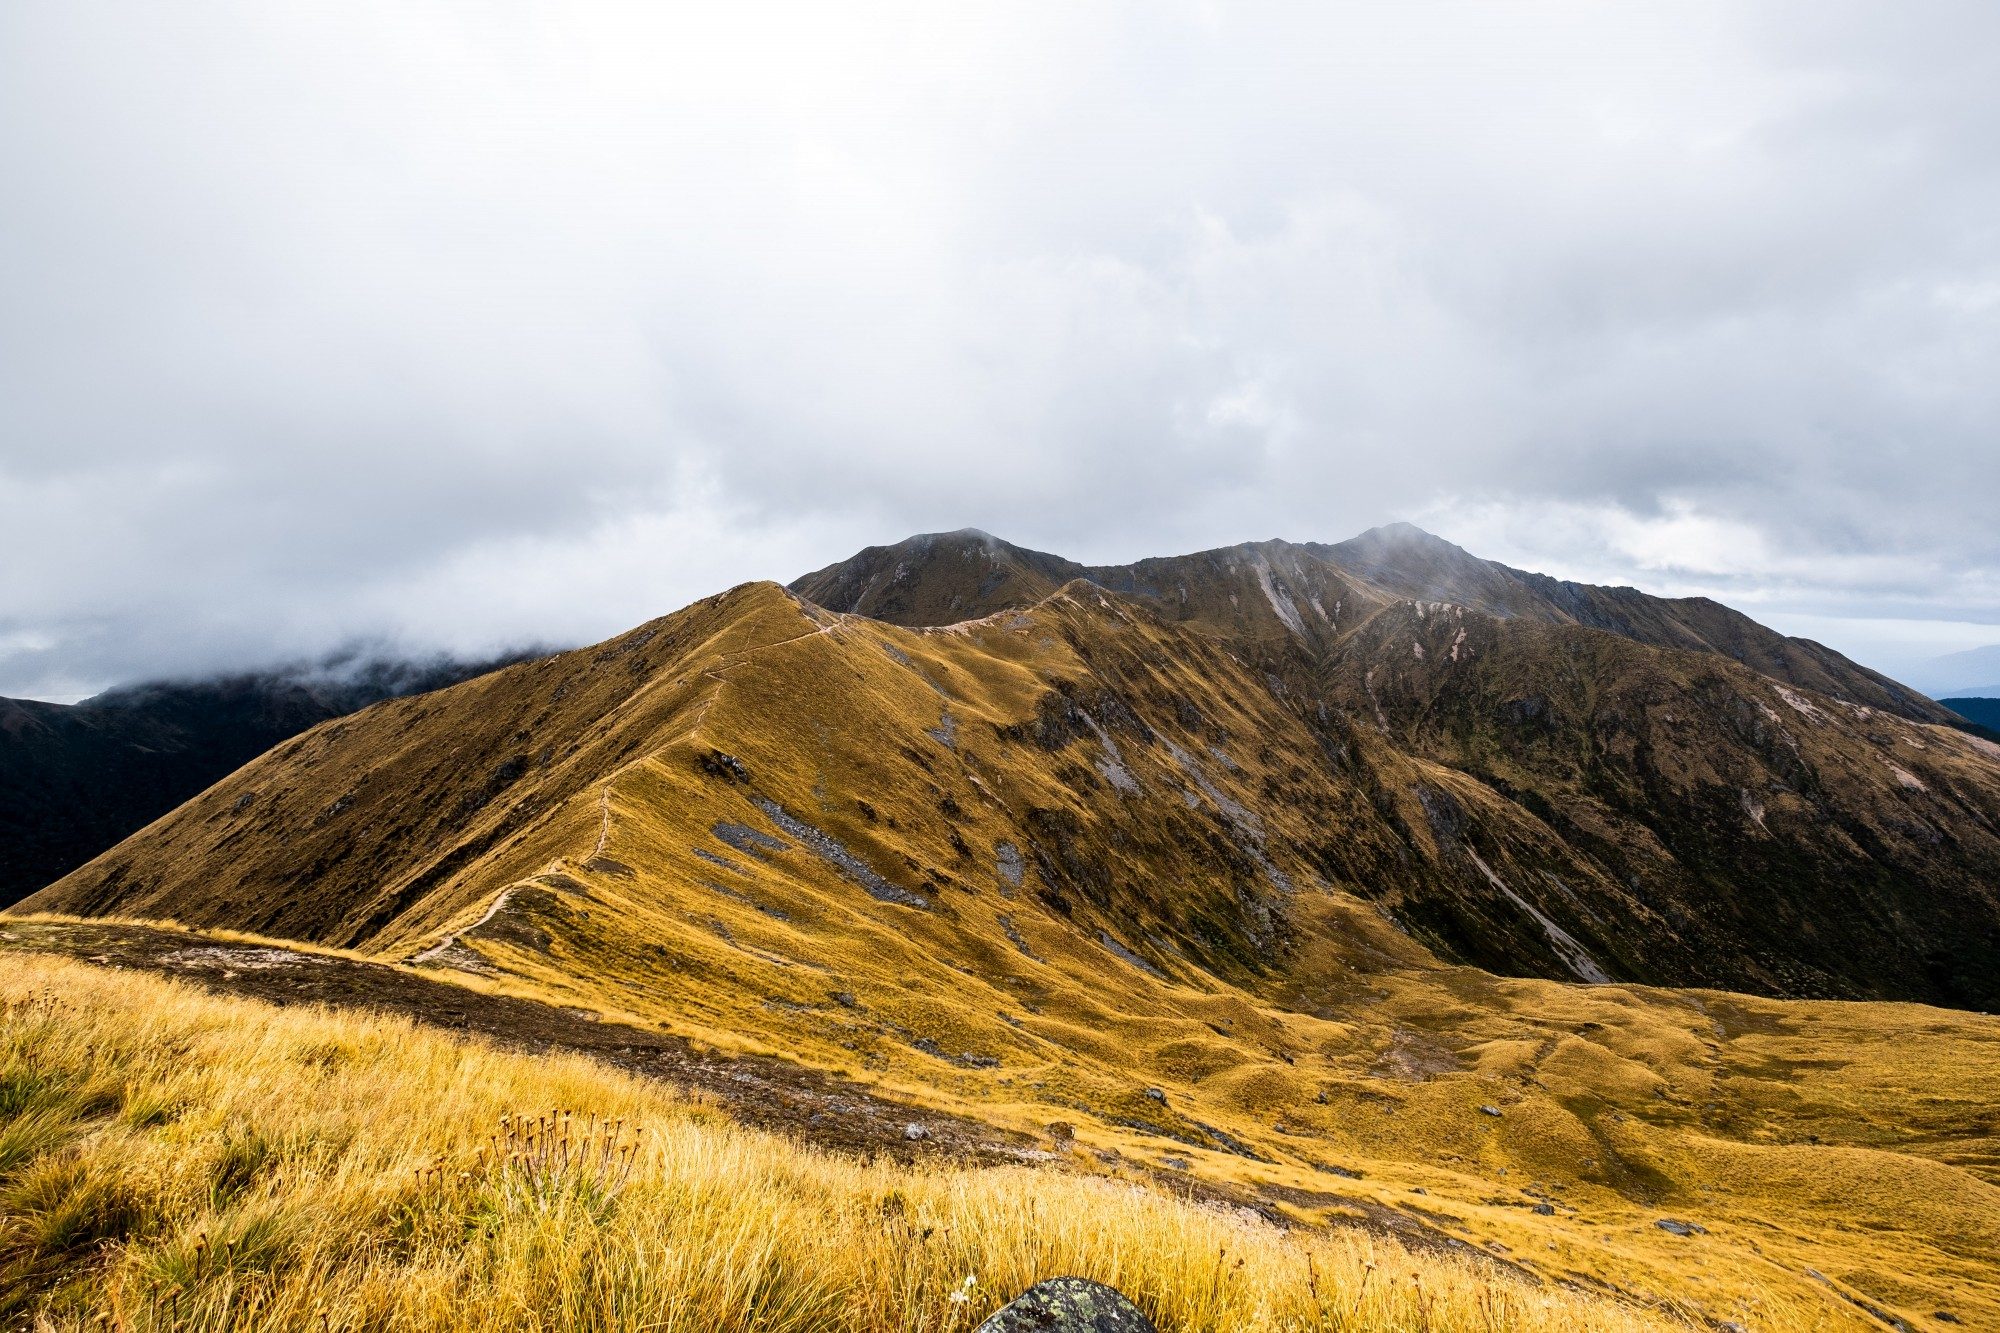 Kepler track fiordland trail over the mountain range